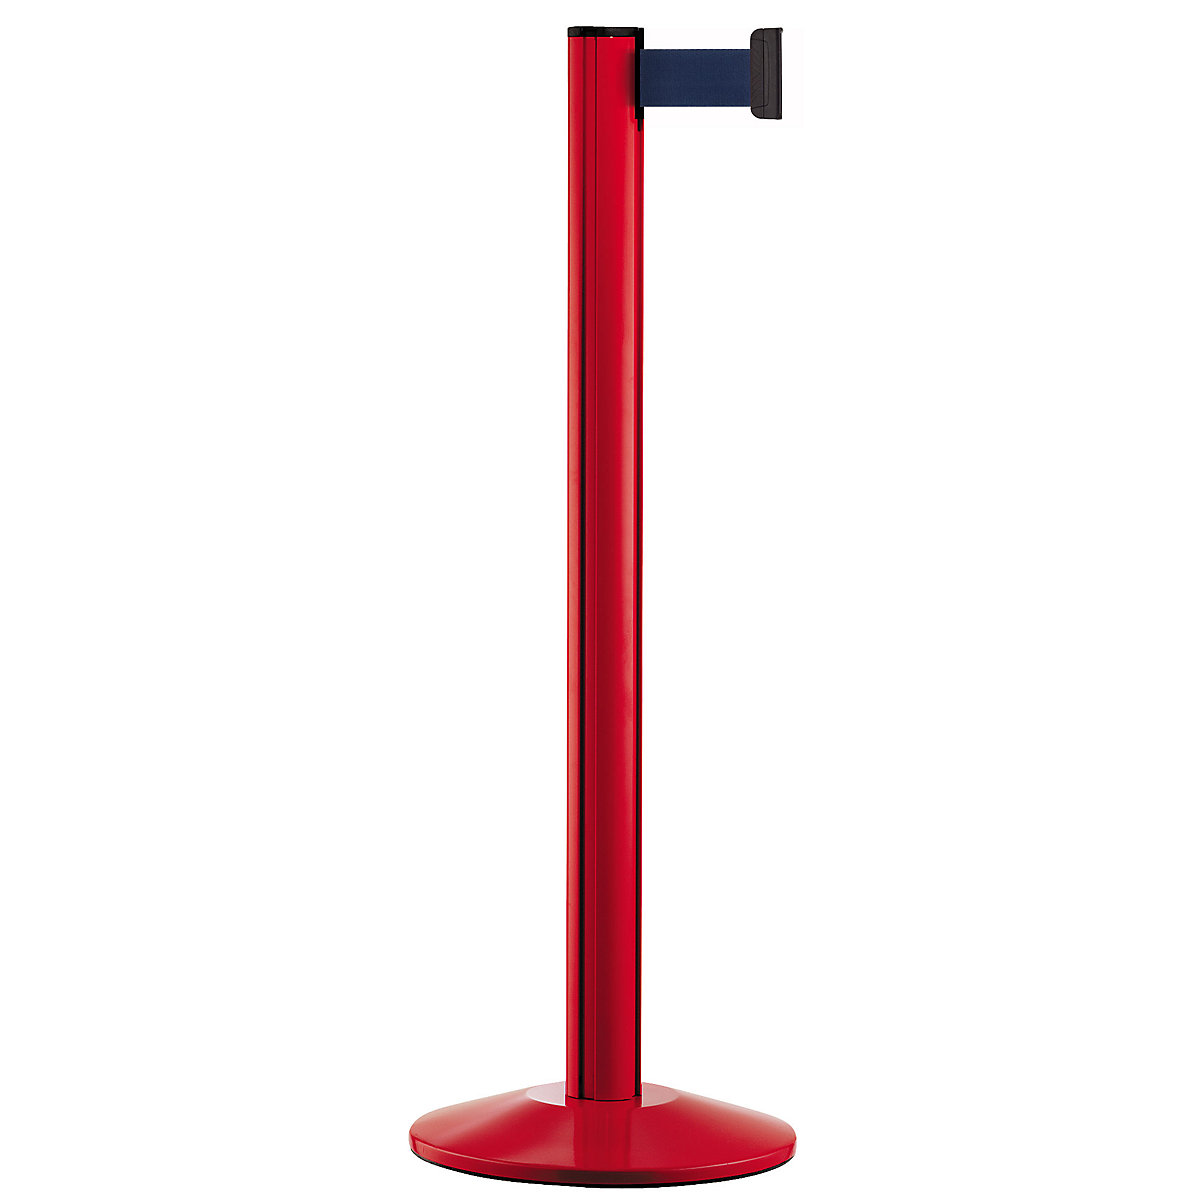 Belt post made of aluminium, post red, extends 2300 mm, belt colour navy-9